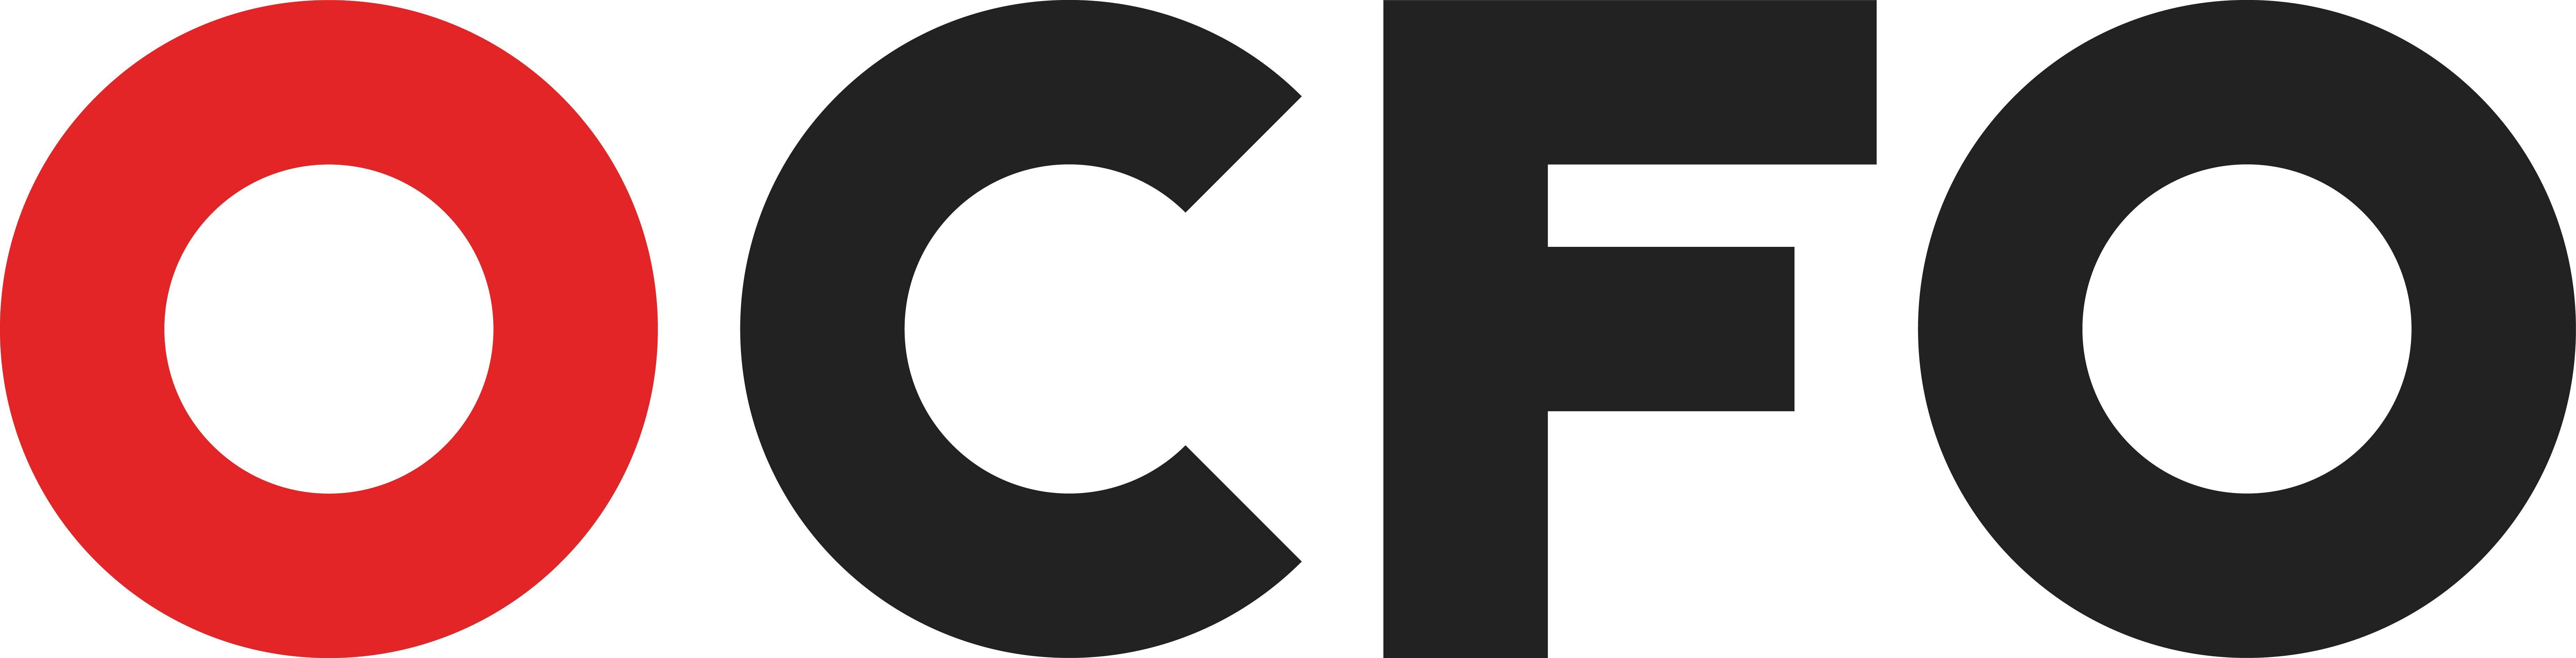 CFO Logo - Outsourced CFO Financial Management & Accounting, Financial